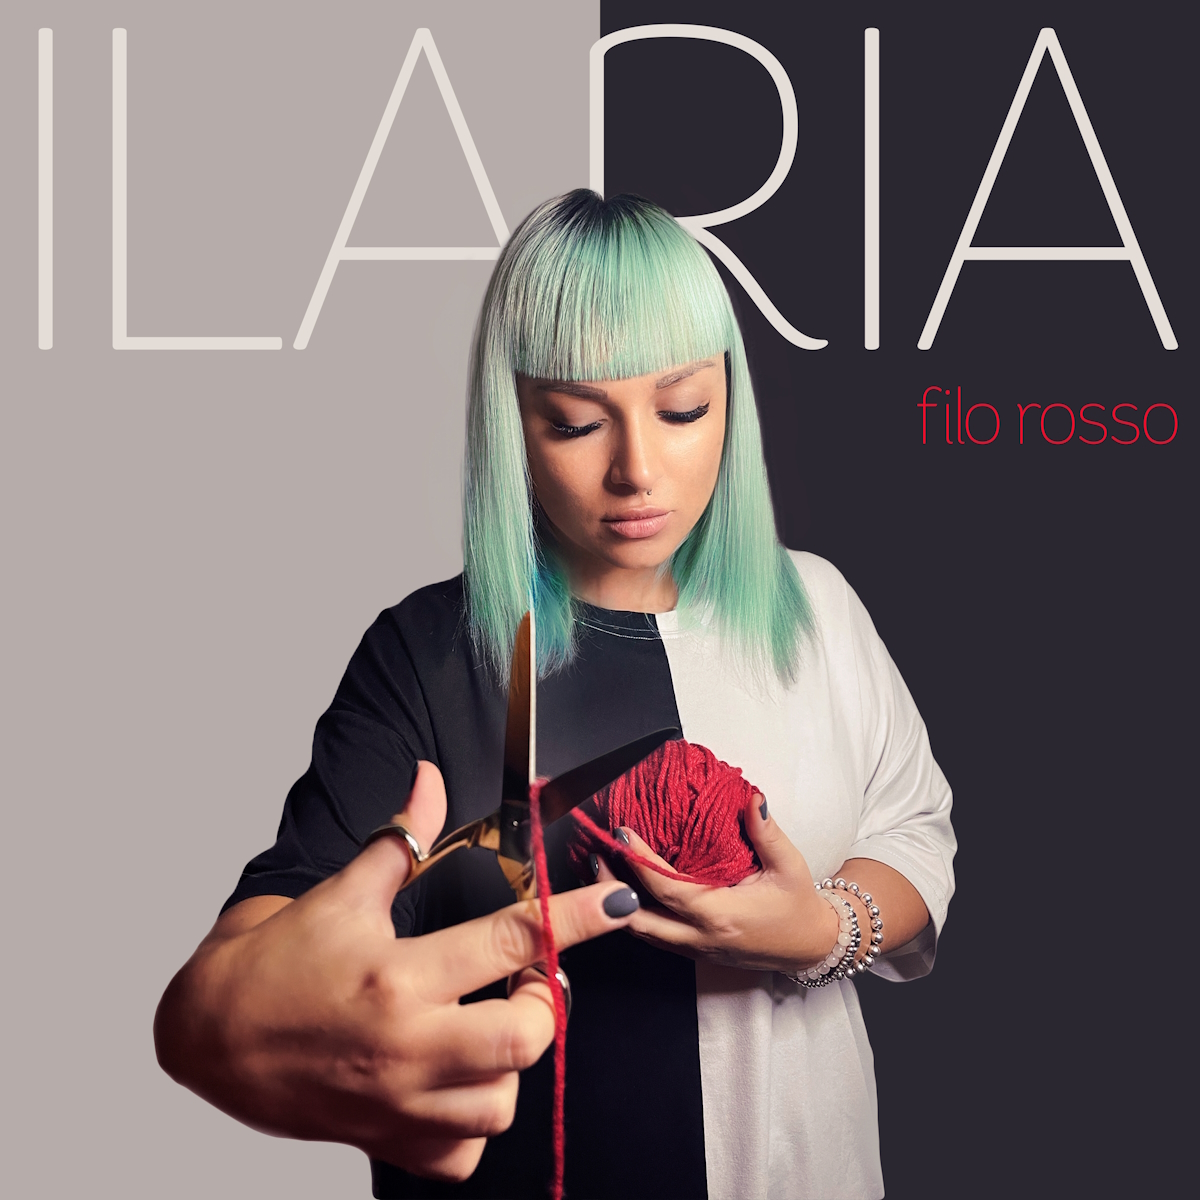 <strong> “Filo rosso” è il nuovo singolo di Ilaria, dal 3 novembre in radio</strong>